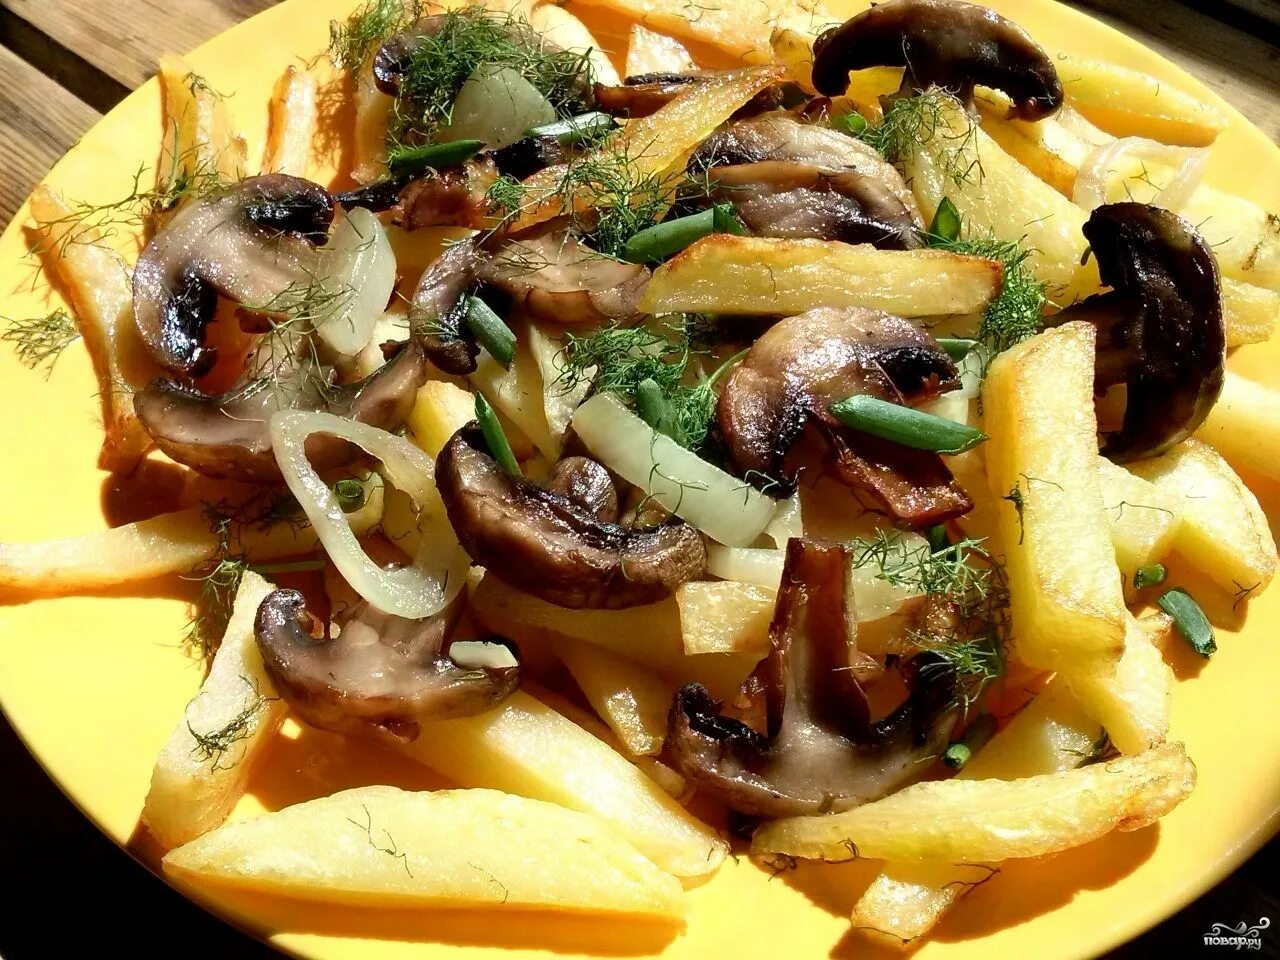 Жареная картошка с грибами. Жареная картошка с шампиньонами. Картофель с грибами и луком. Картошка жареная с грибами шампиньонами.